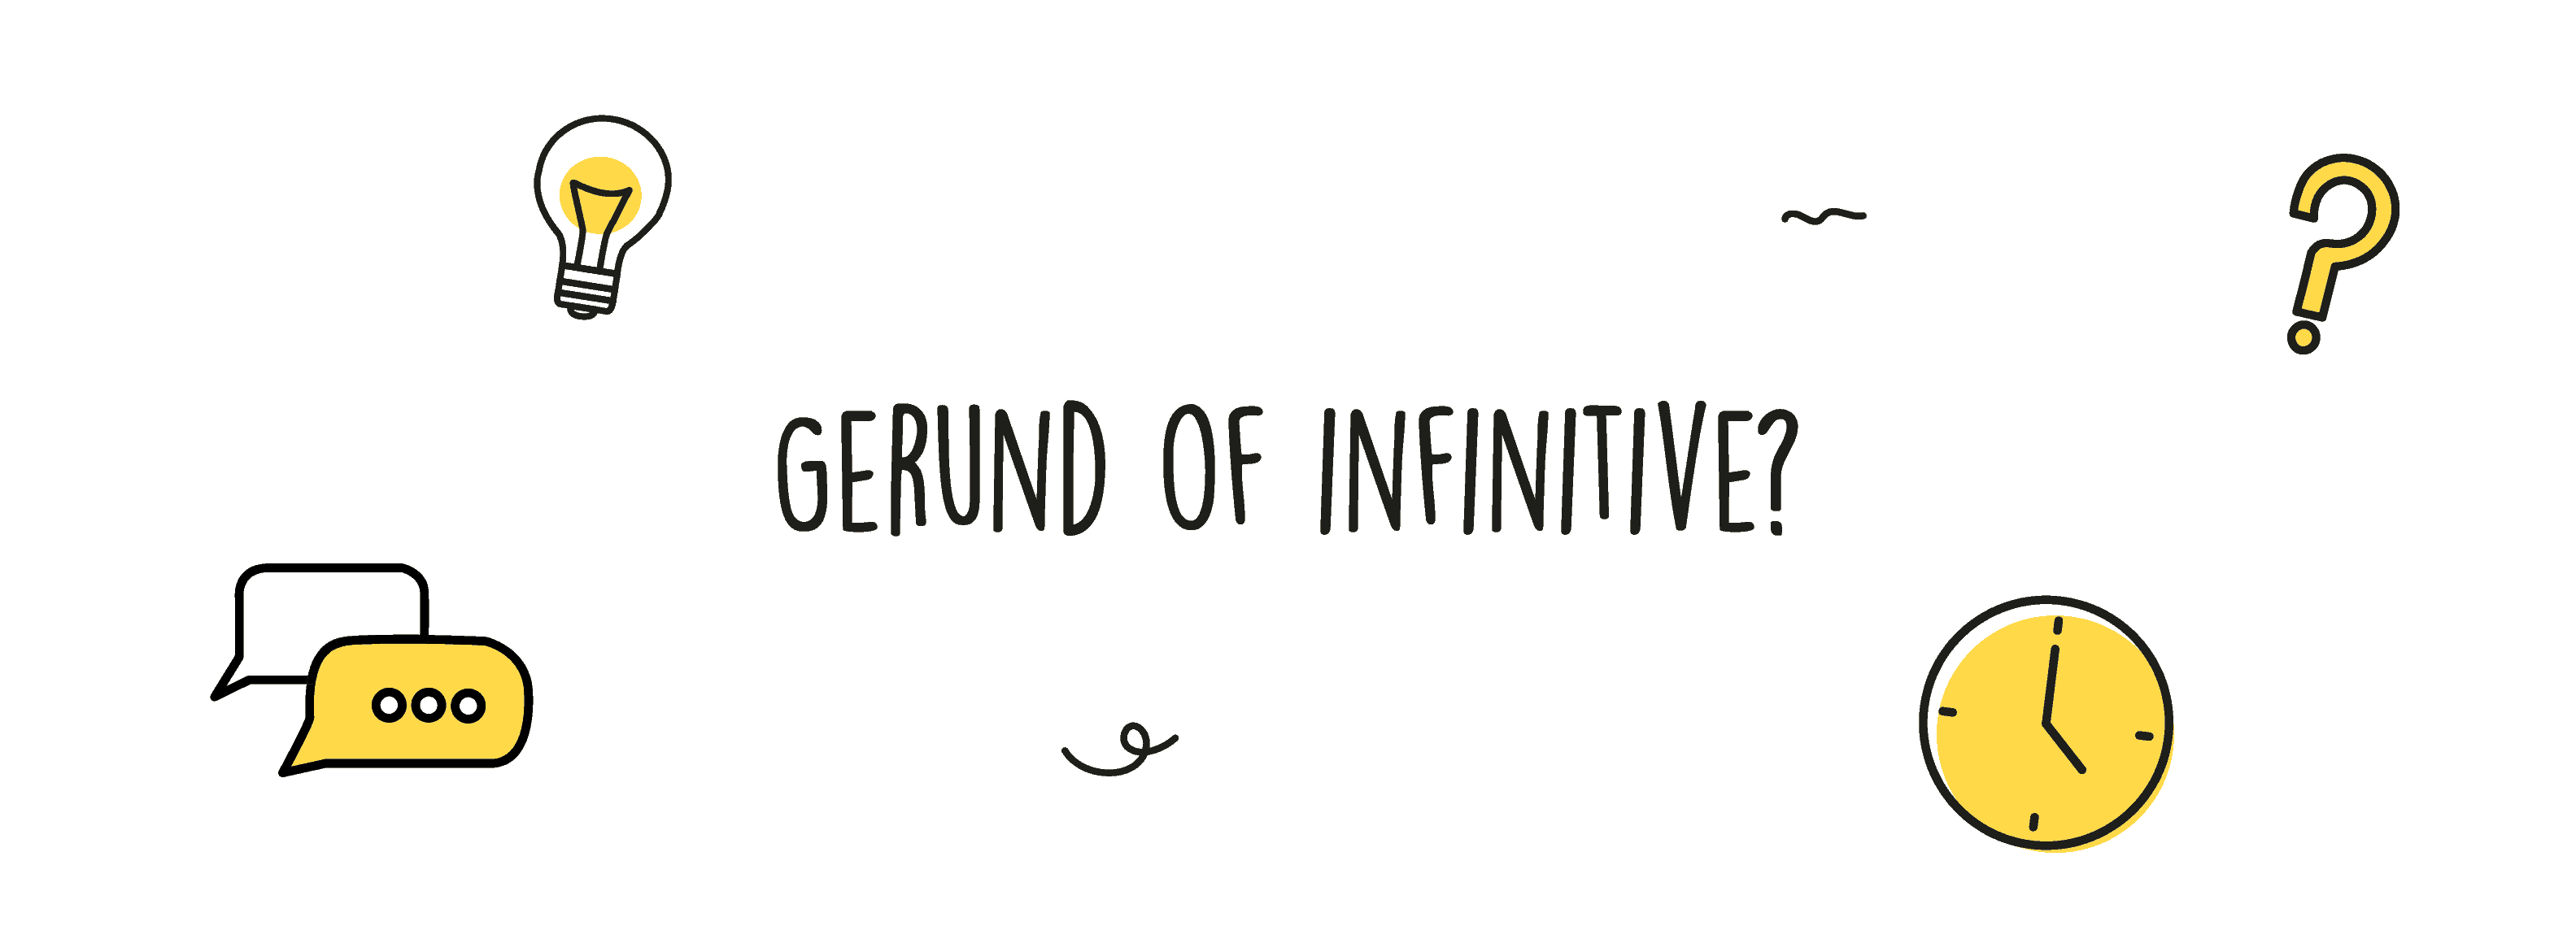 Gerund of infinitive